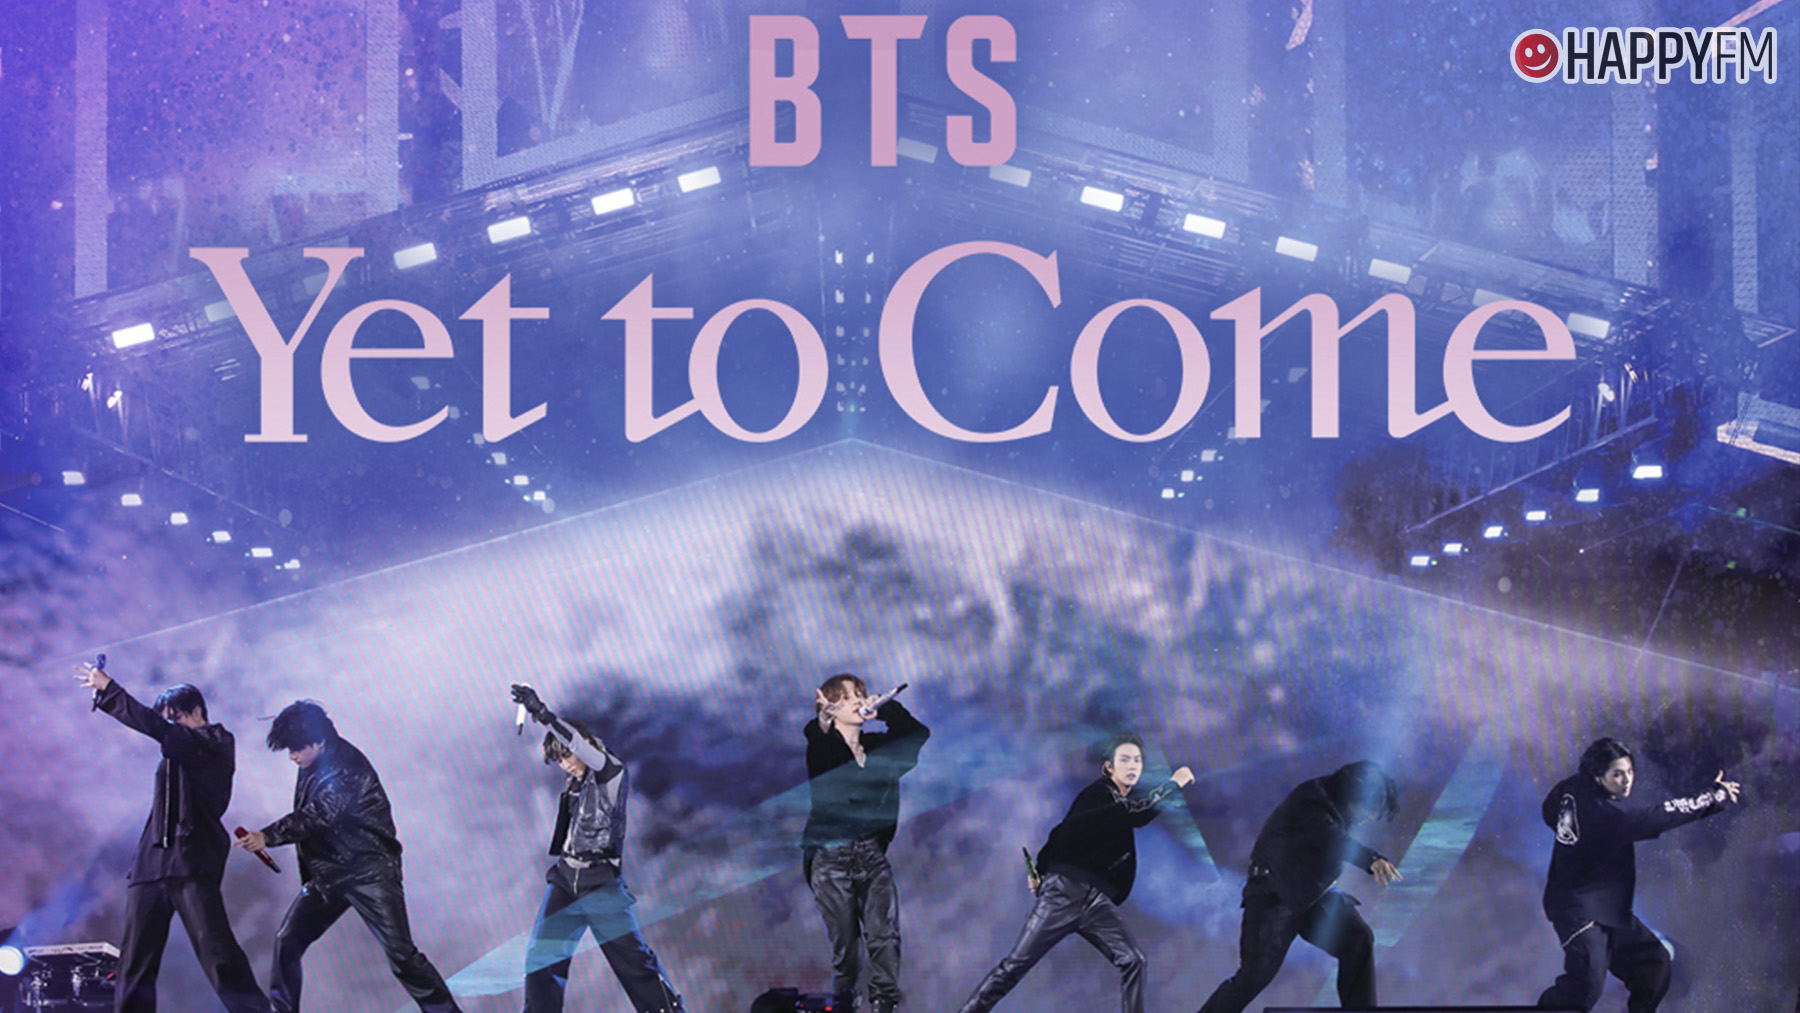 BTS: Yet to Come un concierto único que llega a Prime Vídeo